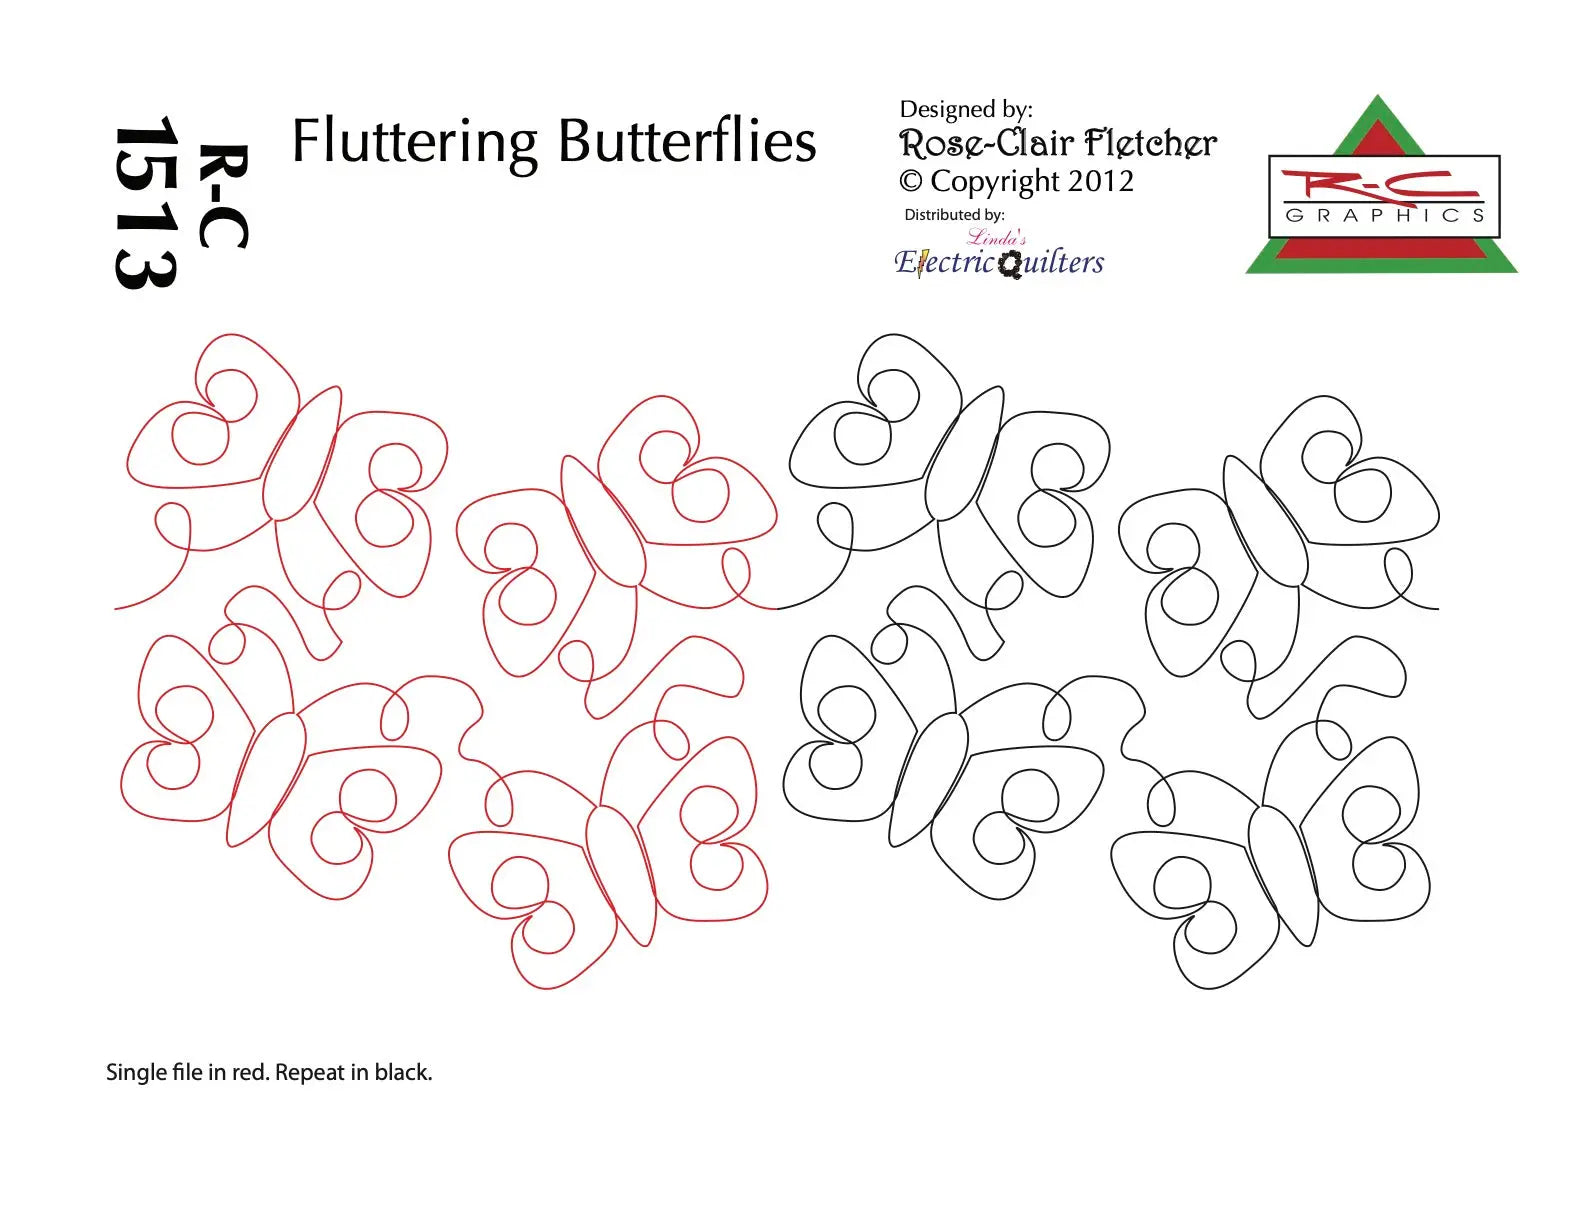 1513 Fluttering Butterflies Pantograph by Rose-Clair Fletcher